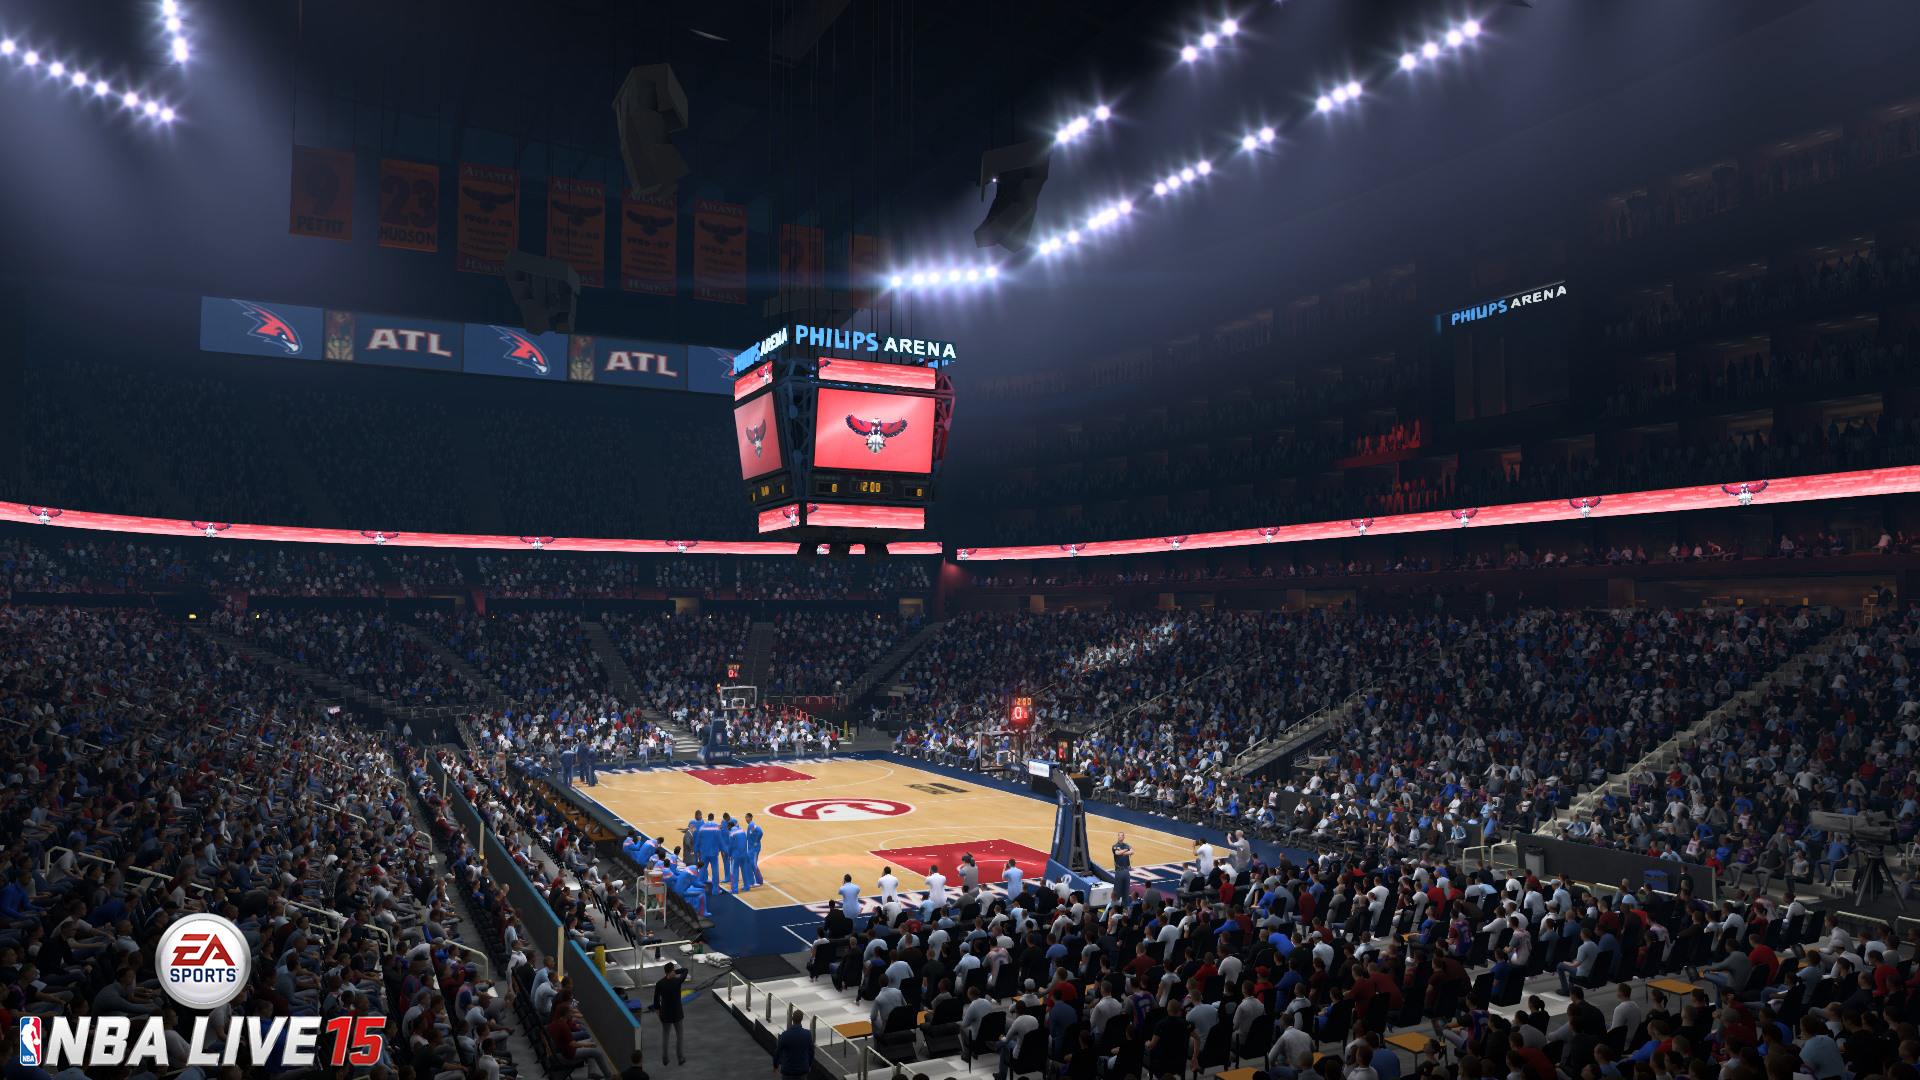 Latest NBA Live 15 Screenshot: Philips Arena